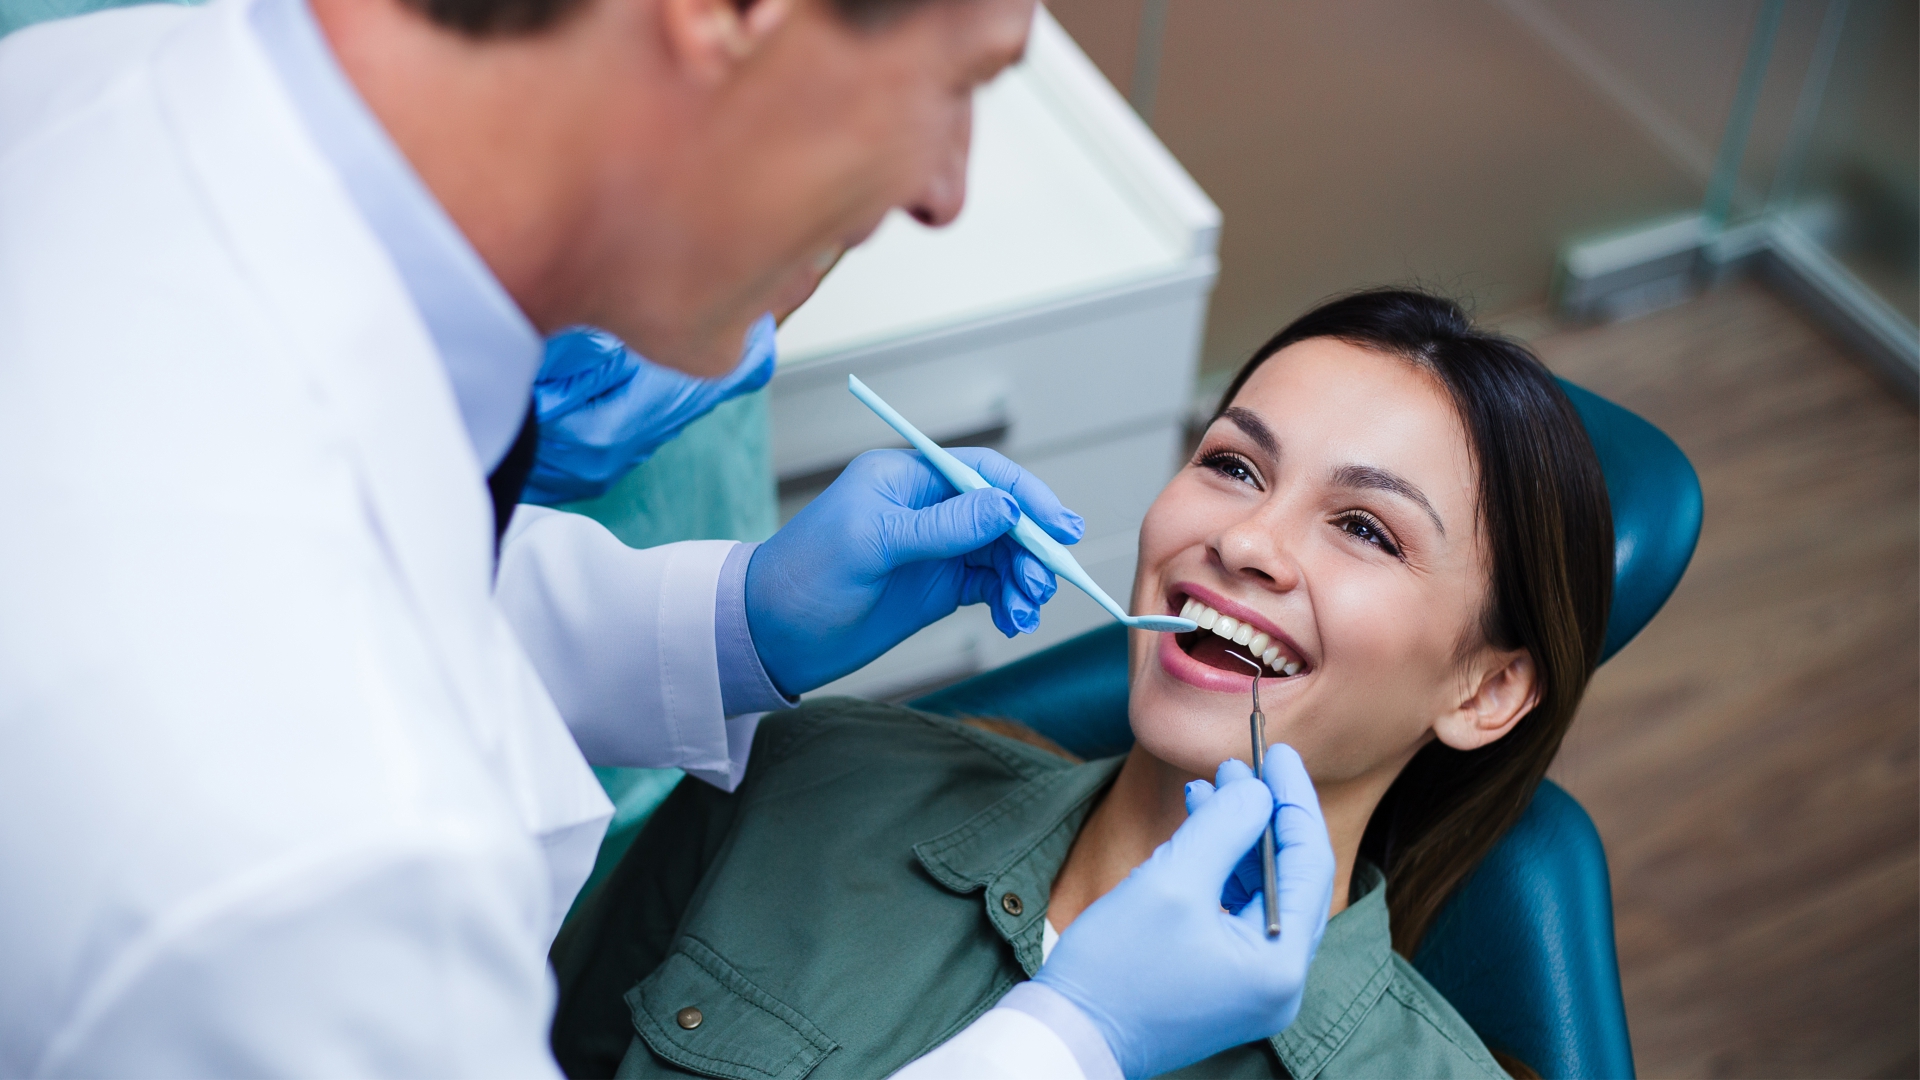 Beneficiários com planos odontológicos: 32,7 milhões de vínculos no País   